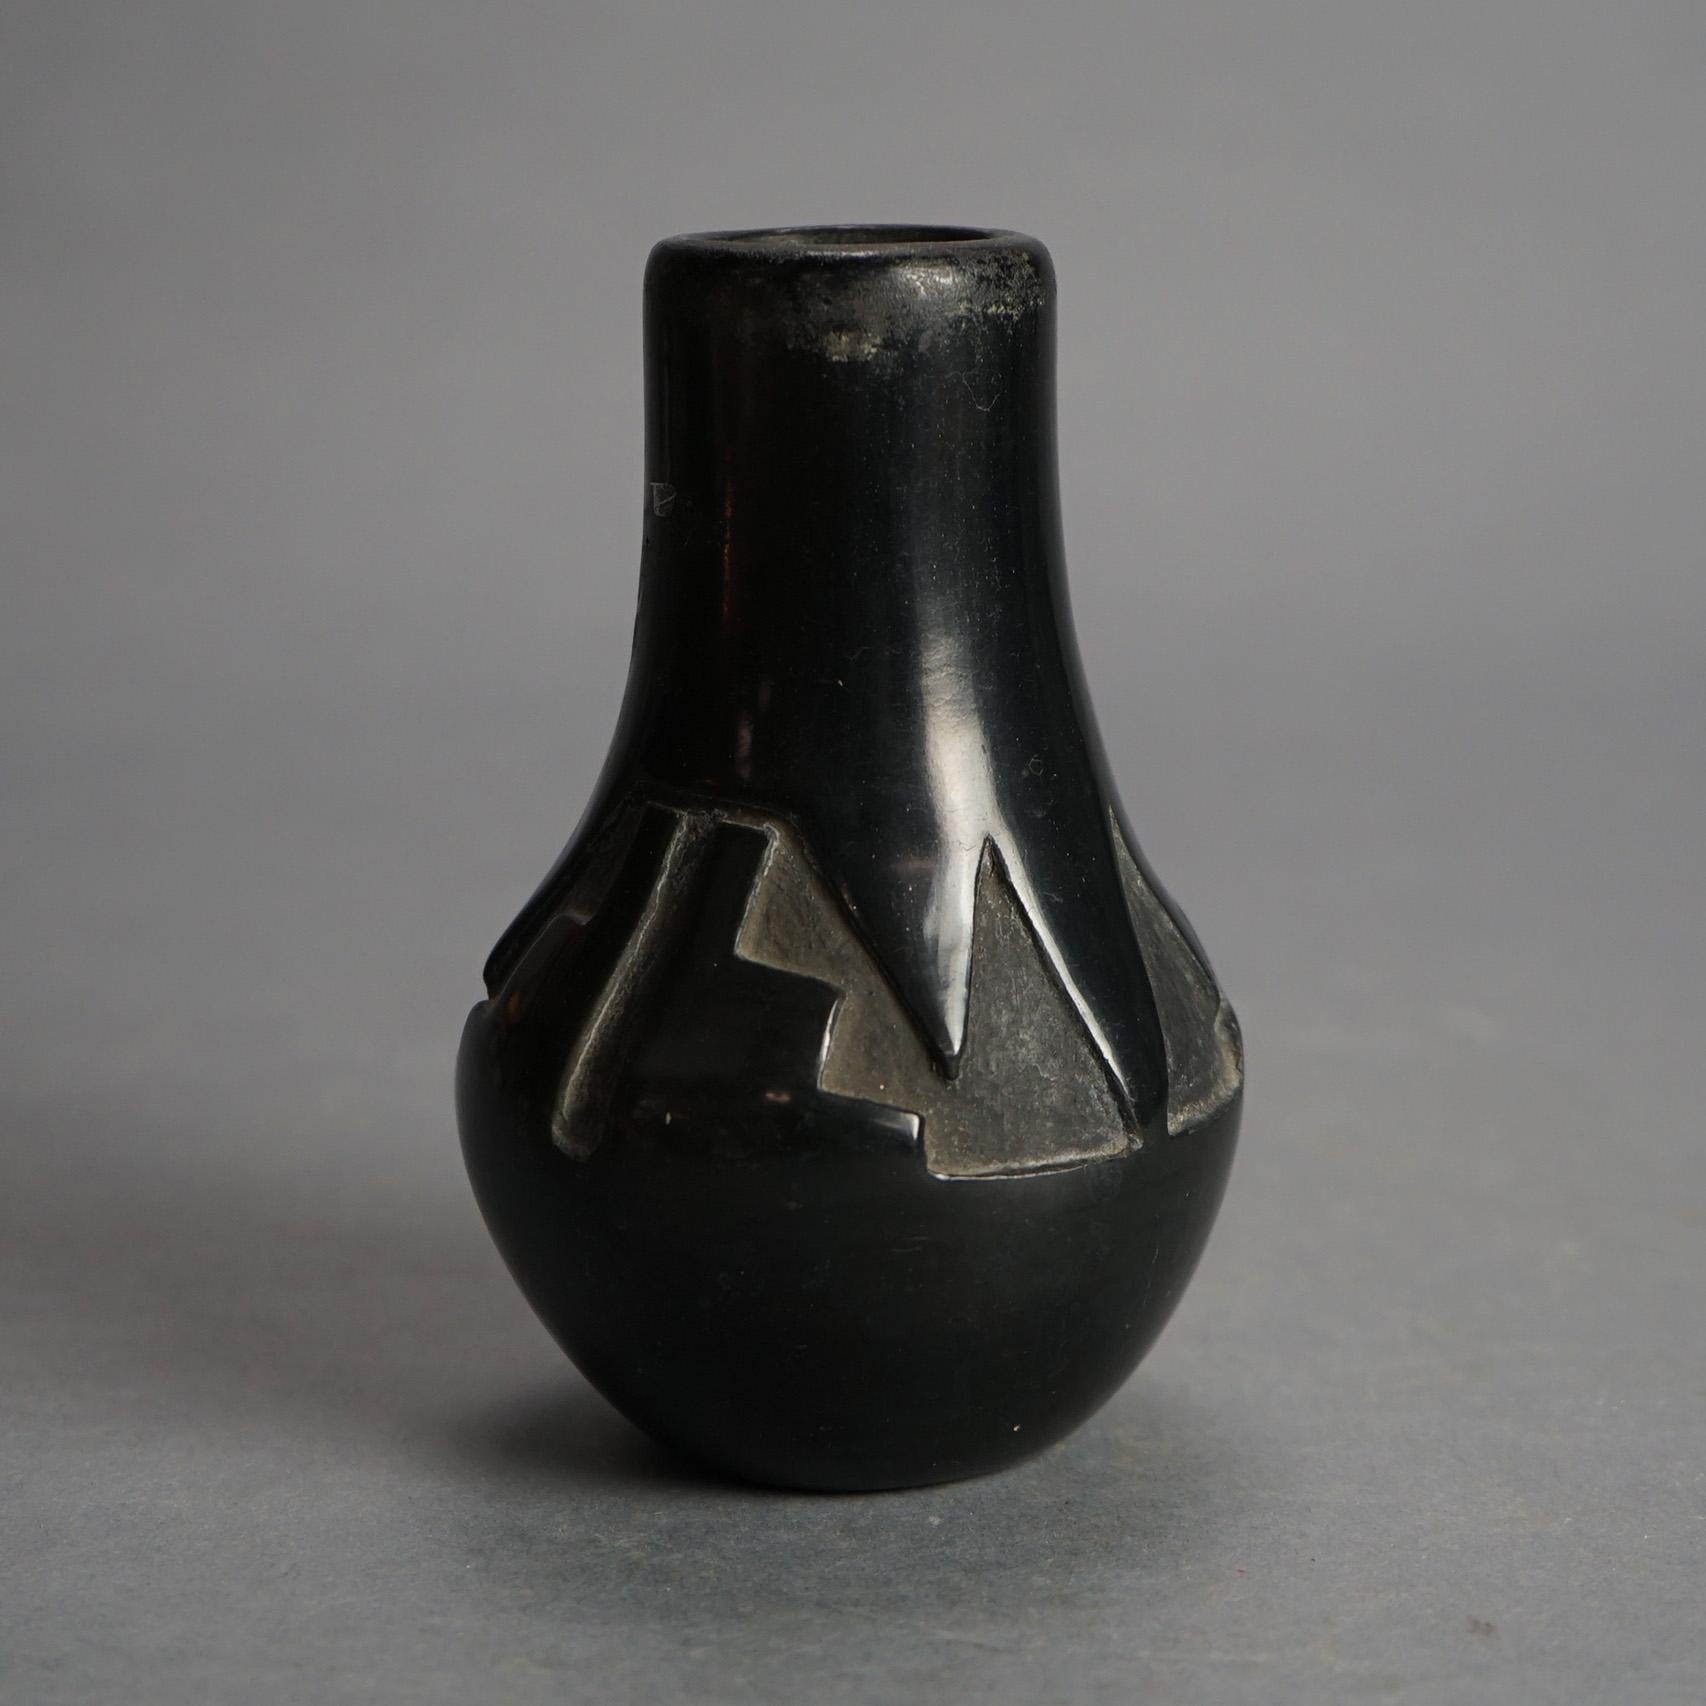 Antique Santa Clara Black on Black Carved  In-Relief Pueblo Pottery C1920

Measures - 5.5